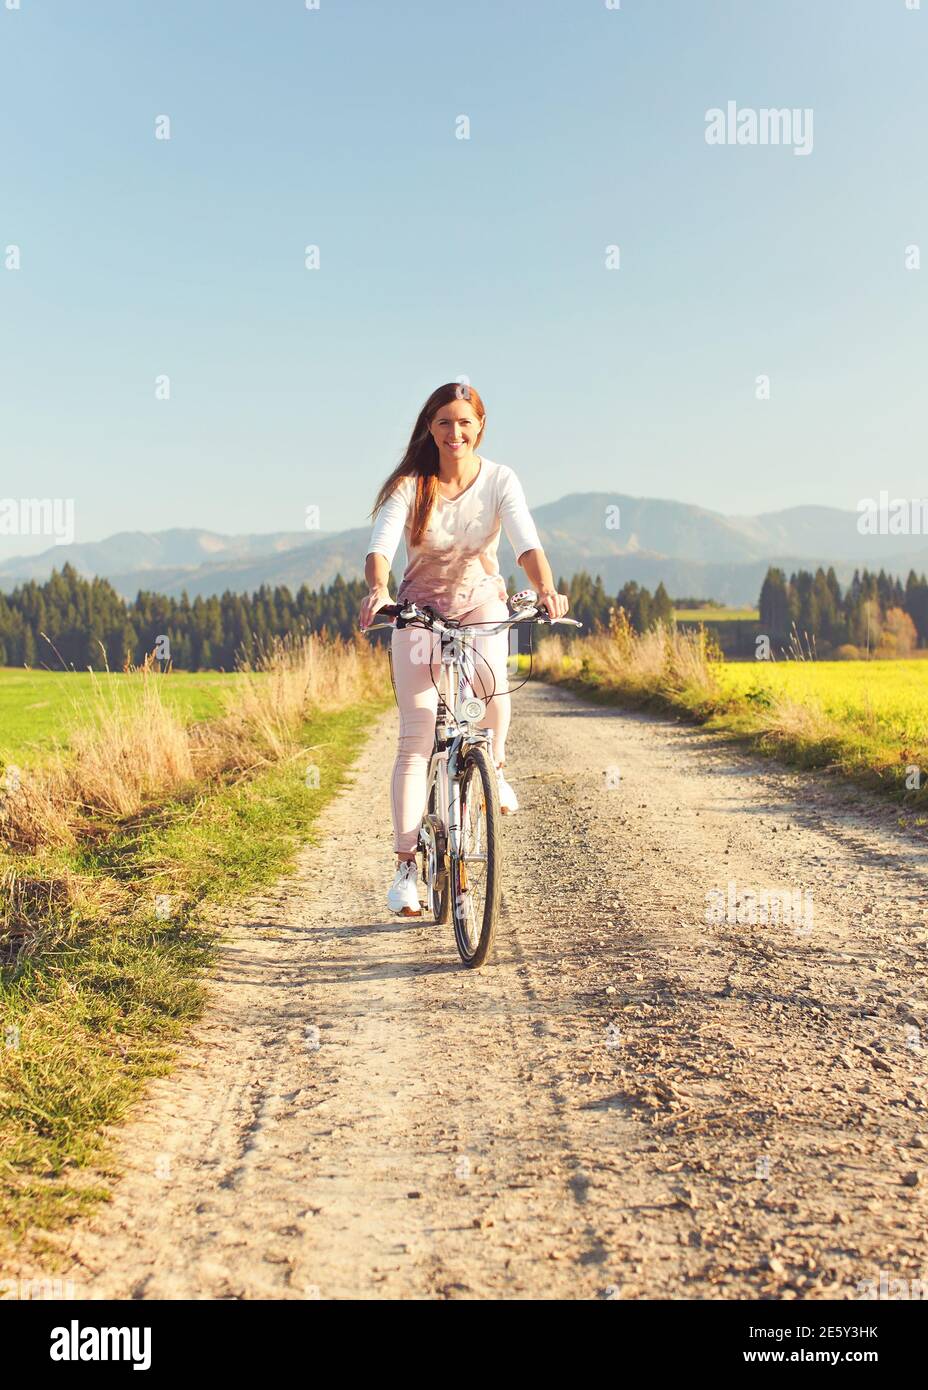 Junge Frau im Sommer leichte Kleidung fährt Fahrrad auf staubigen Straße in Richtung Kamera, Nachmittag Sonne scheint auf Felder und Wald im Hintergrund Stockfoto